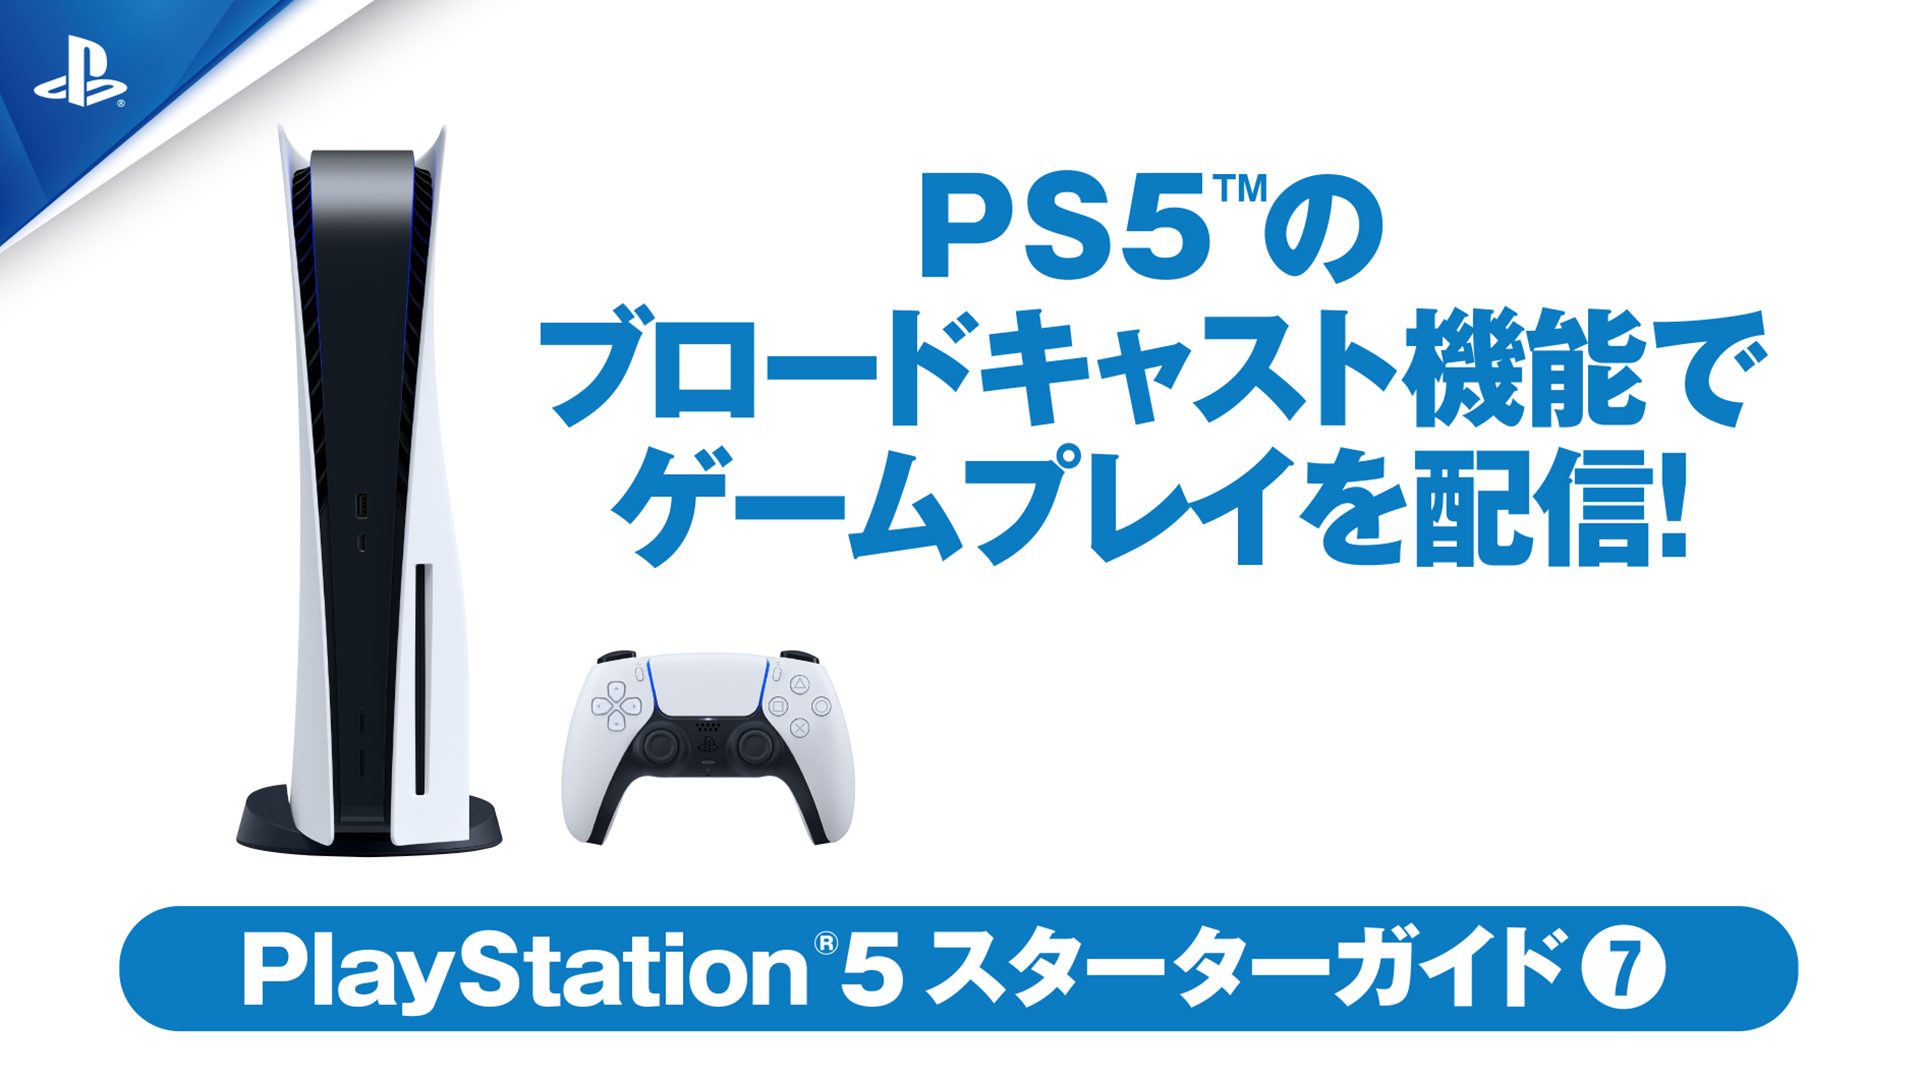 Ps5 のブロードキャスト機能でゲームプレイを配信しよう Ps5スターターガイド Playstation Blog 日本語